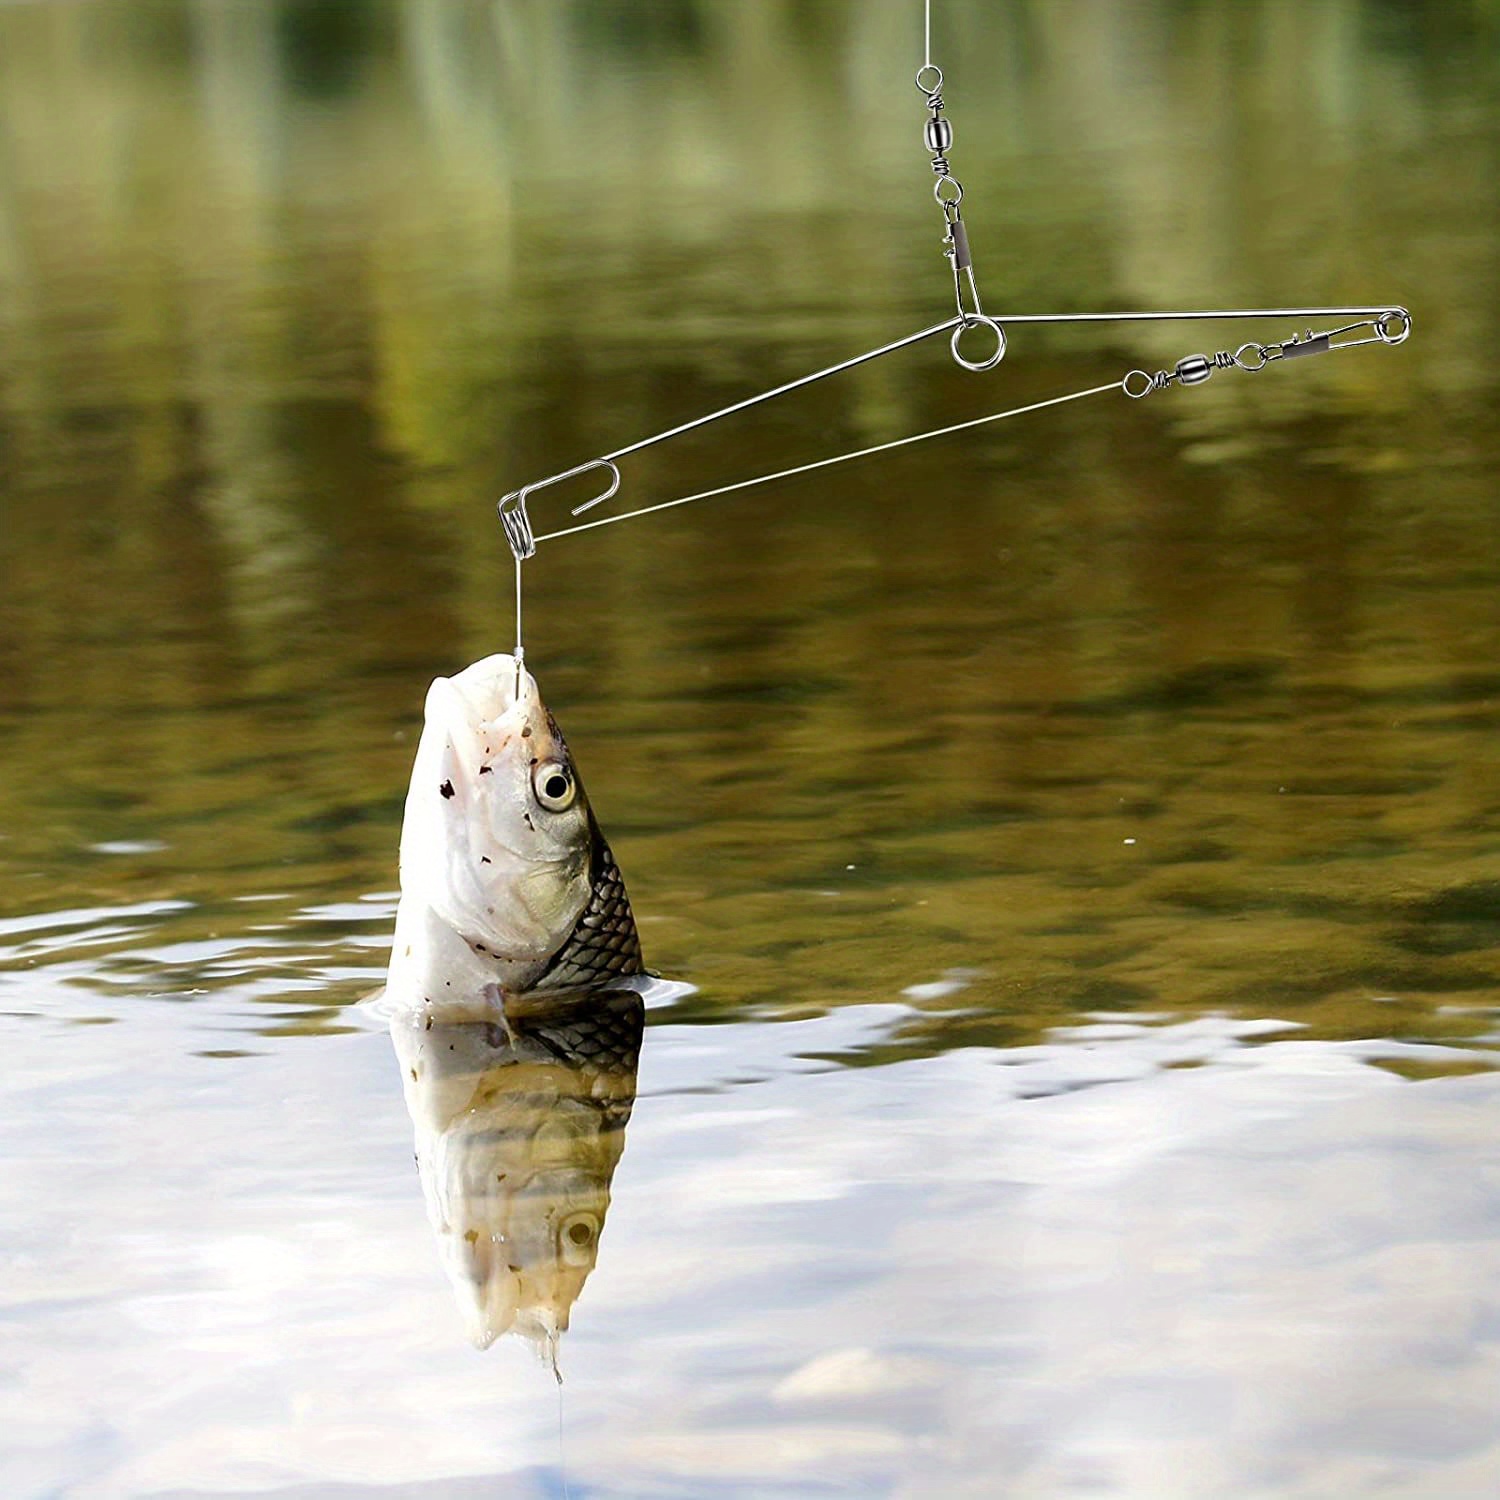 Automatic fishing pole holder. Automatic hook setter #catfish